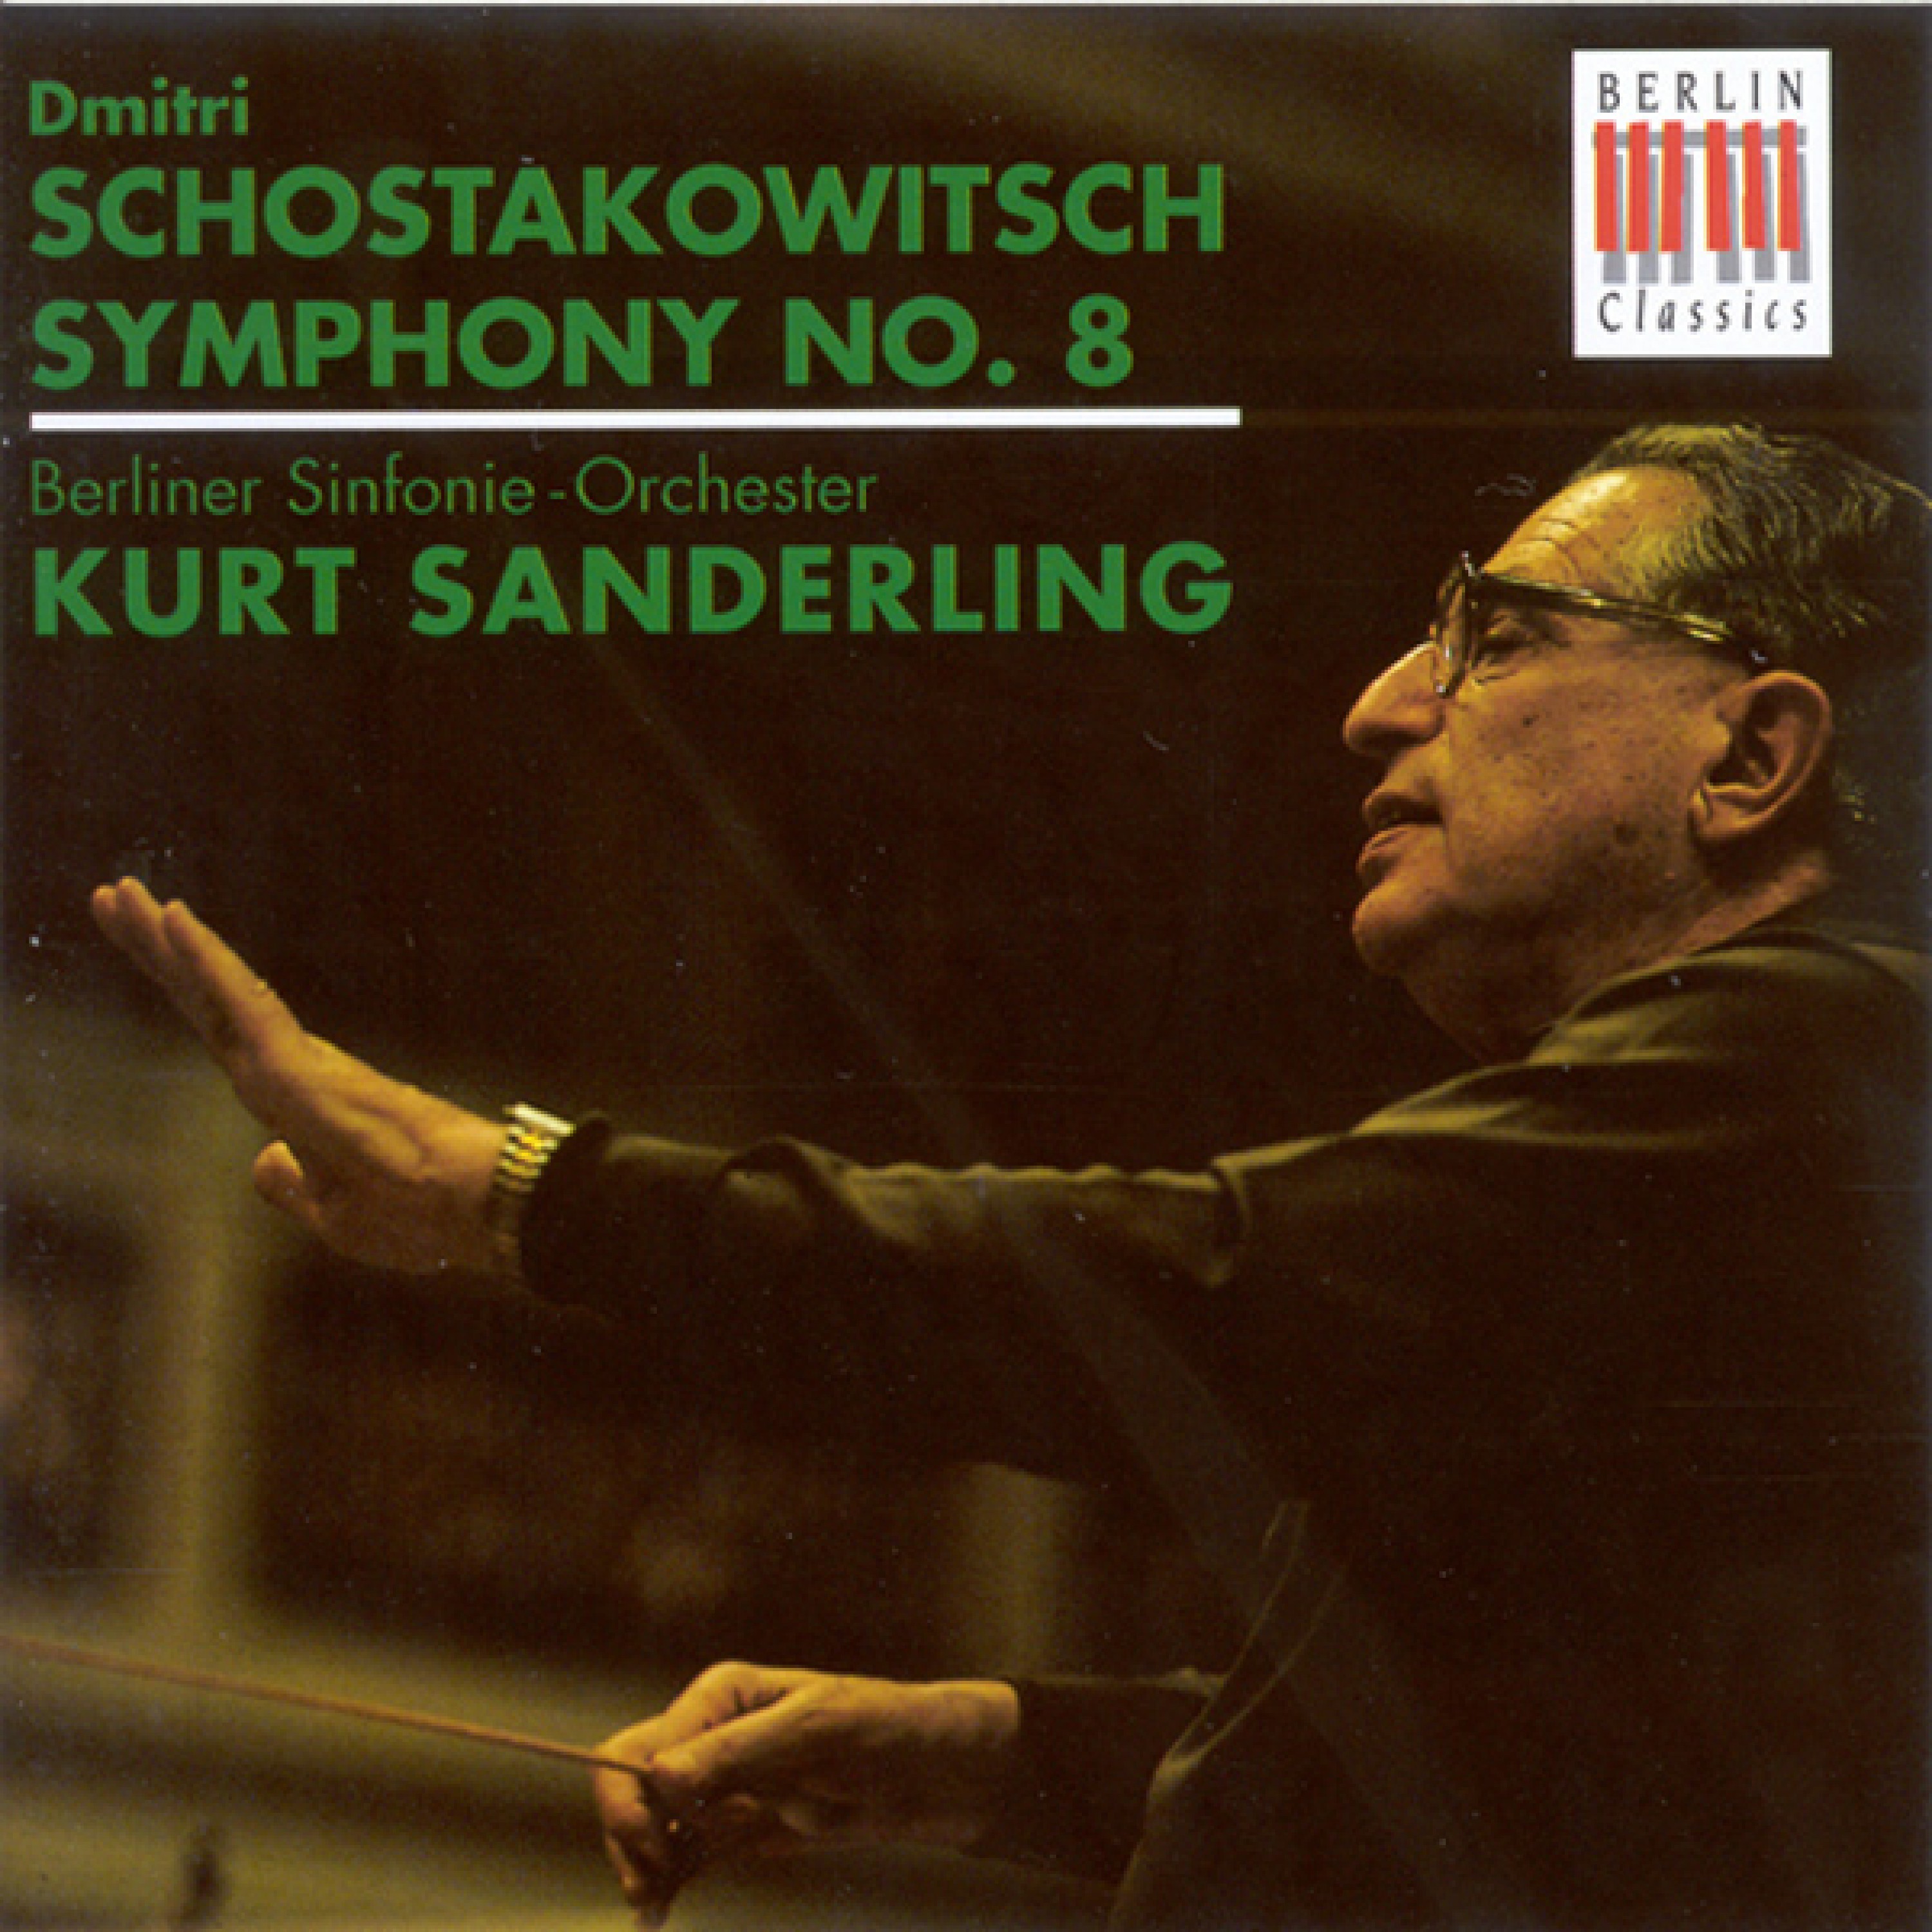 SHOSTAKOVICH, D.: Symphony No. 8 (Berlin Symphony, K. Sanderling)